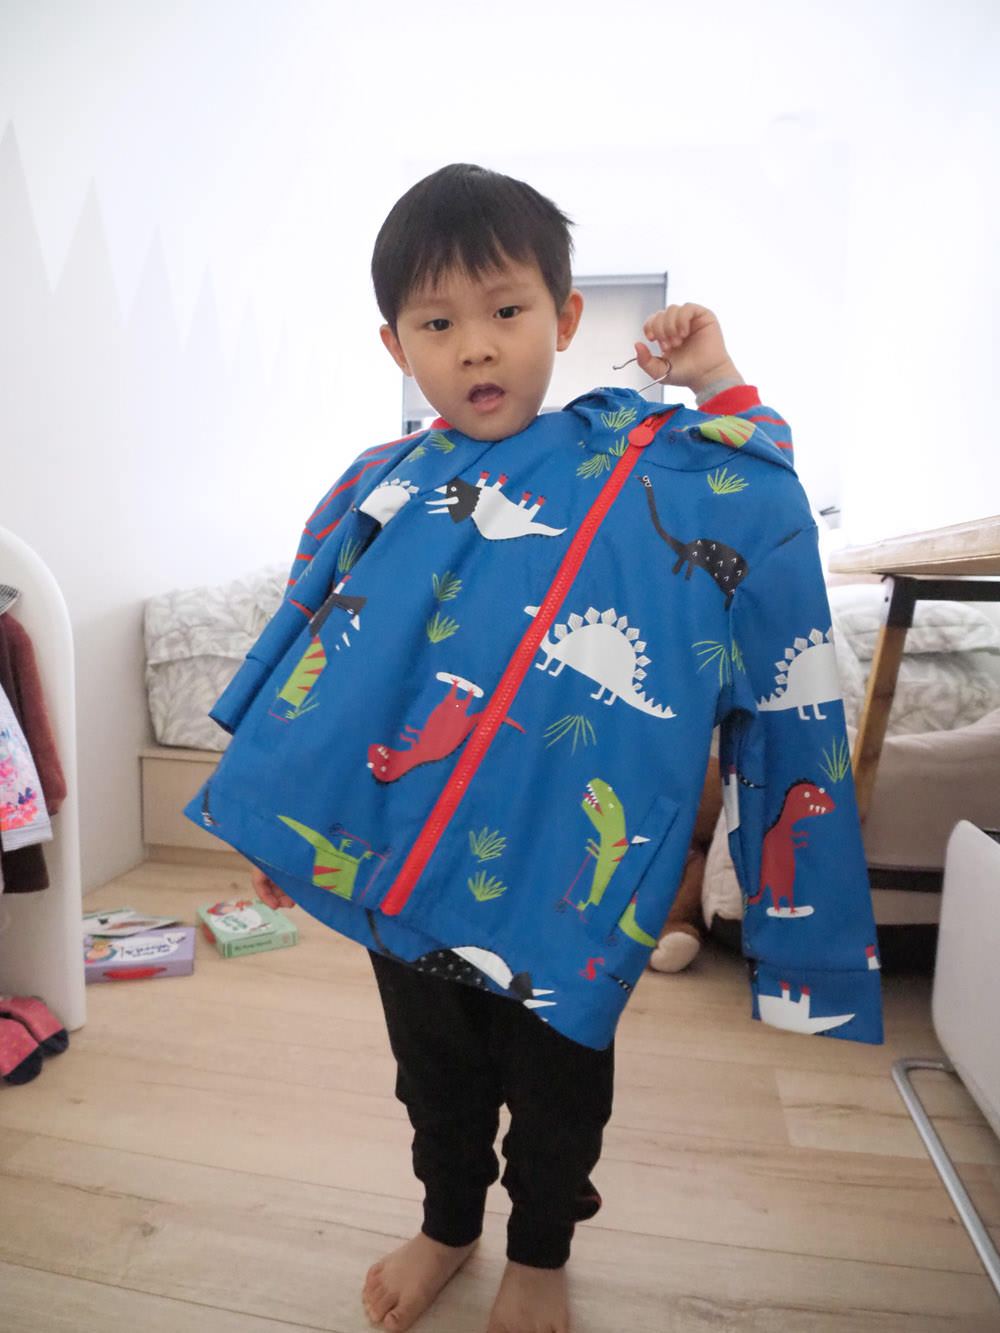 [啾團] 該自己來了!減輕媽媽的負擔.三歲開始的自理能力訓練-韓國Ifam兒童吊掛衣架組(Ifam地墊及圍欄)